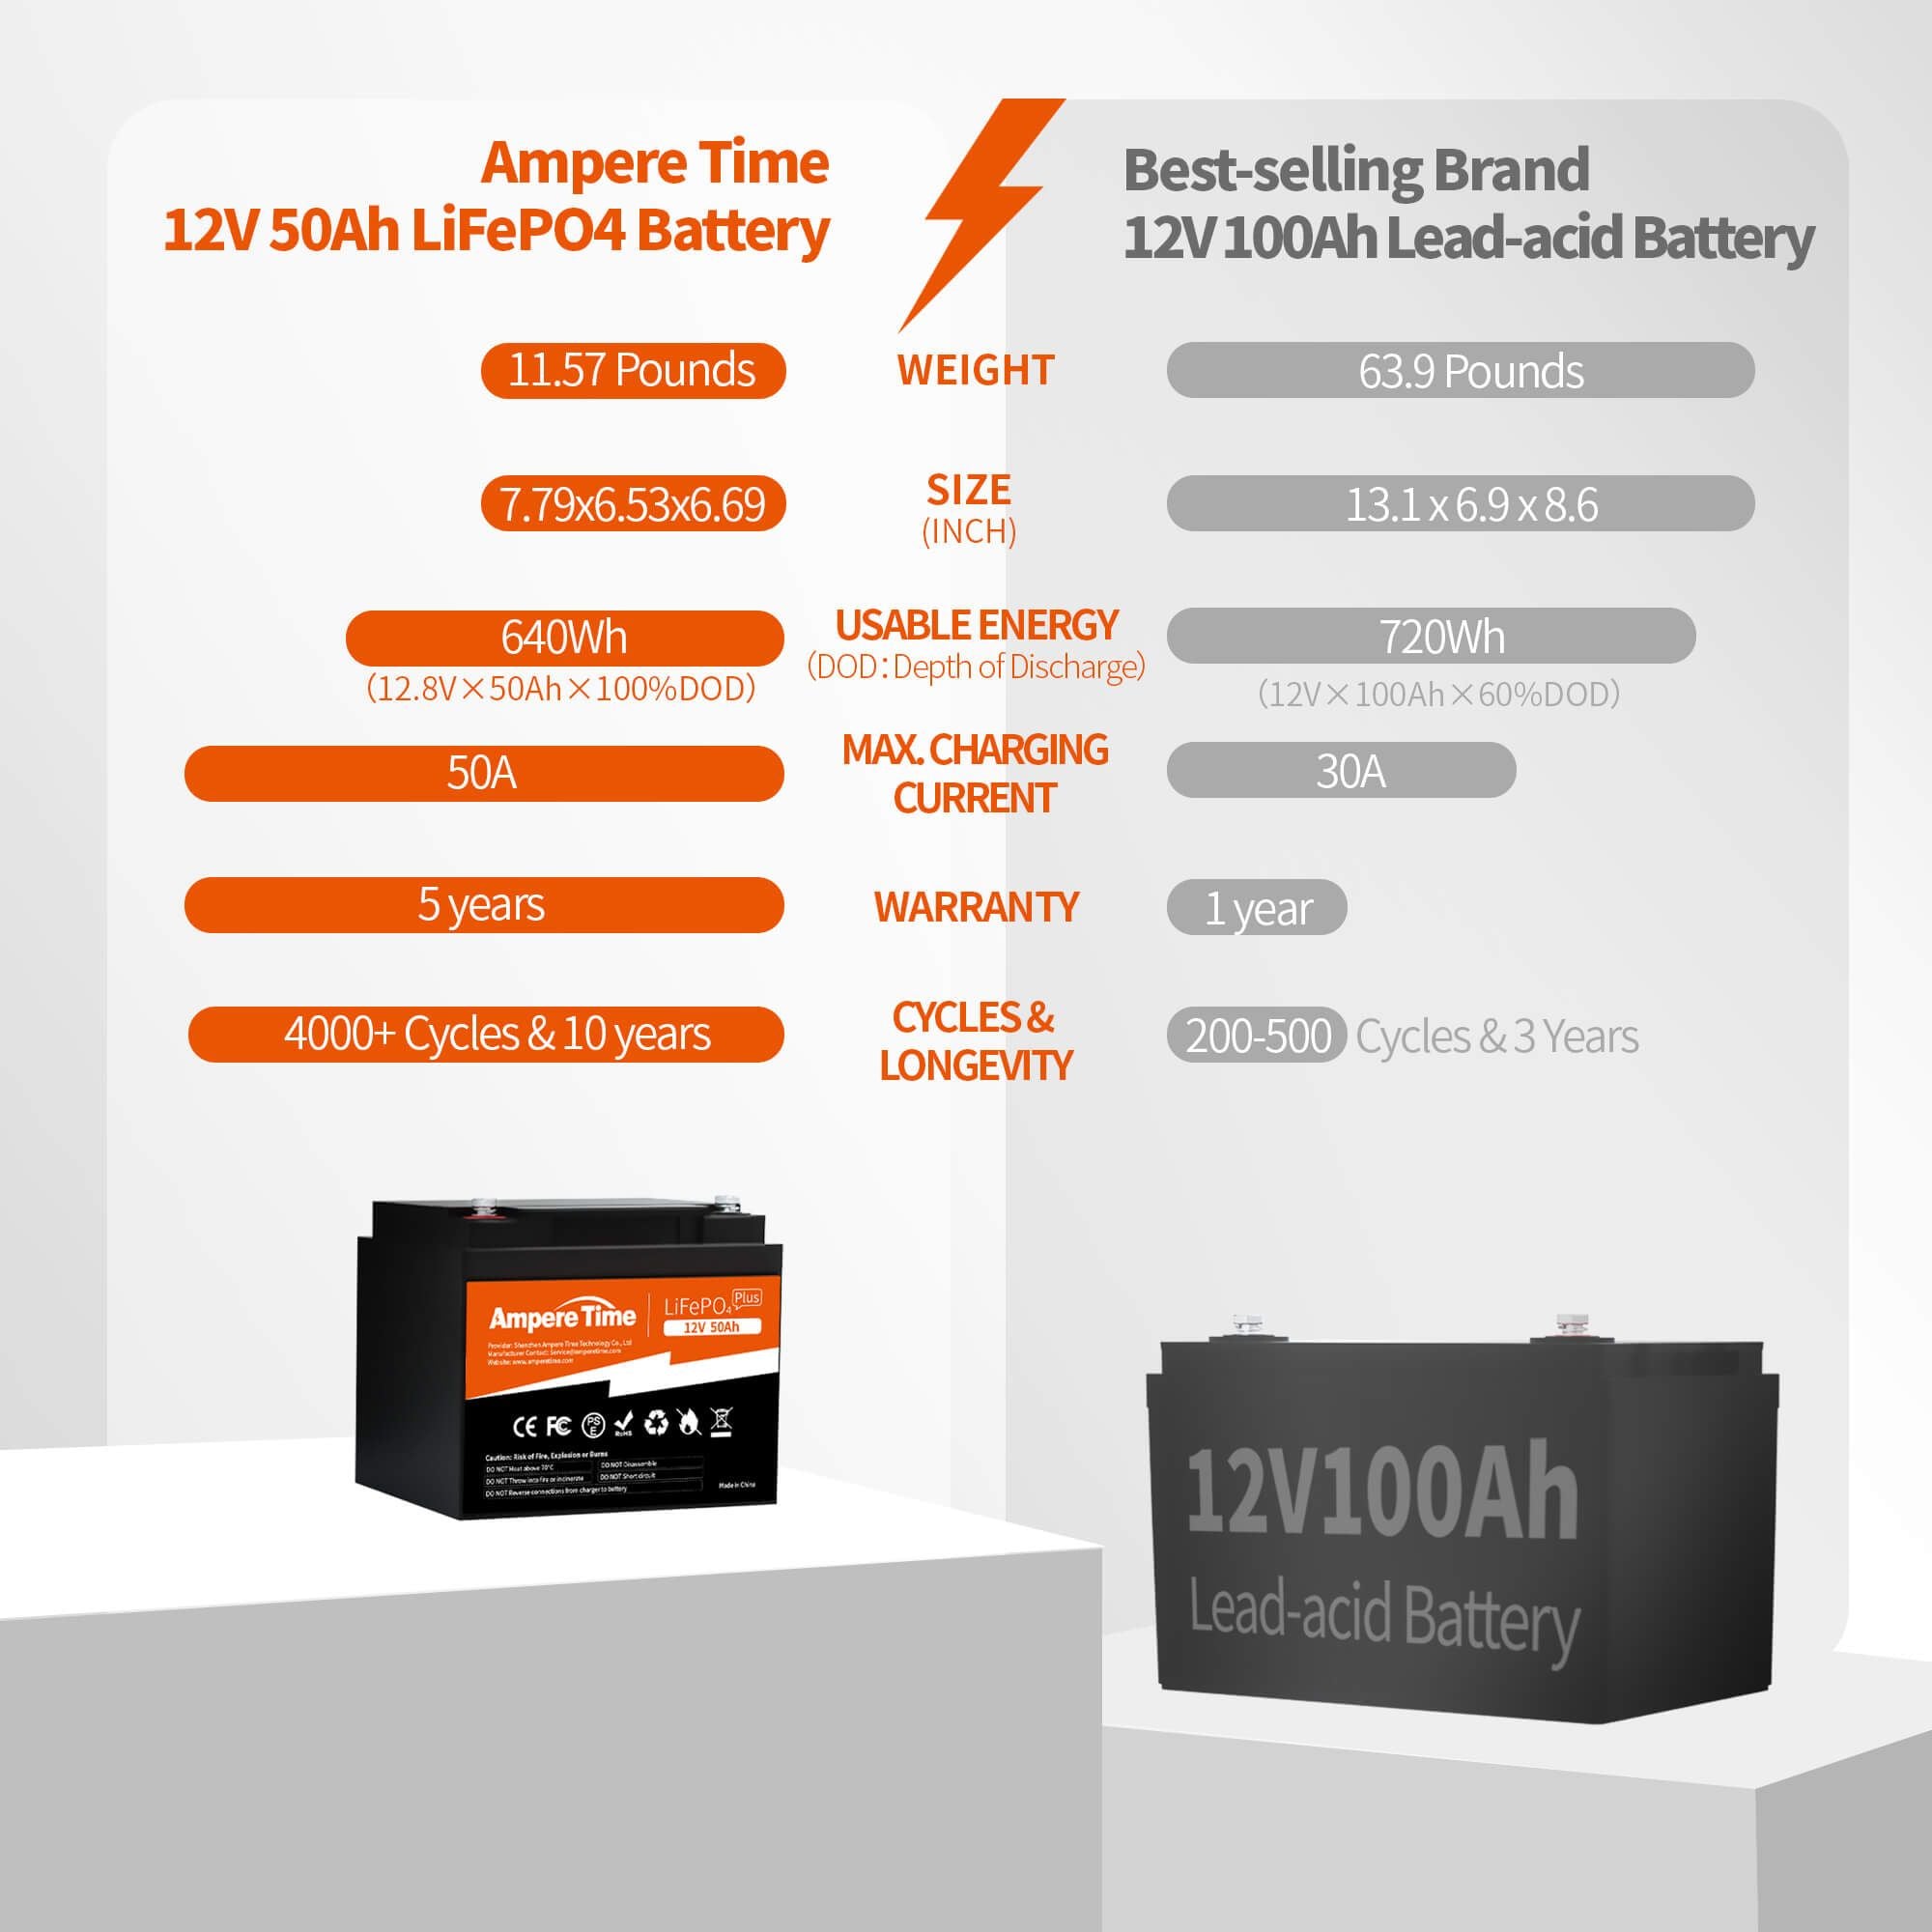 Ampere Time 12V 50Ah, 640Wh LiFePO4 Battery & Built – Amperetime-US